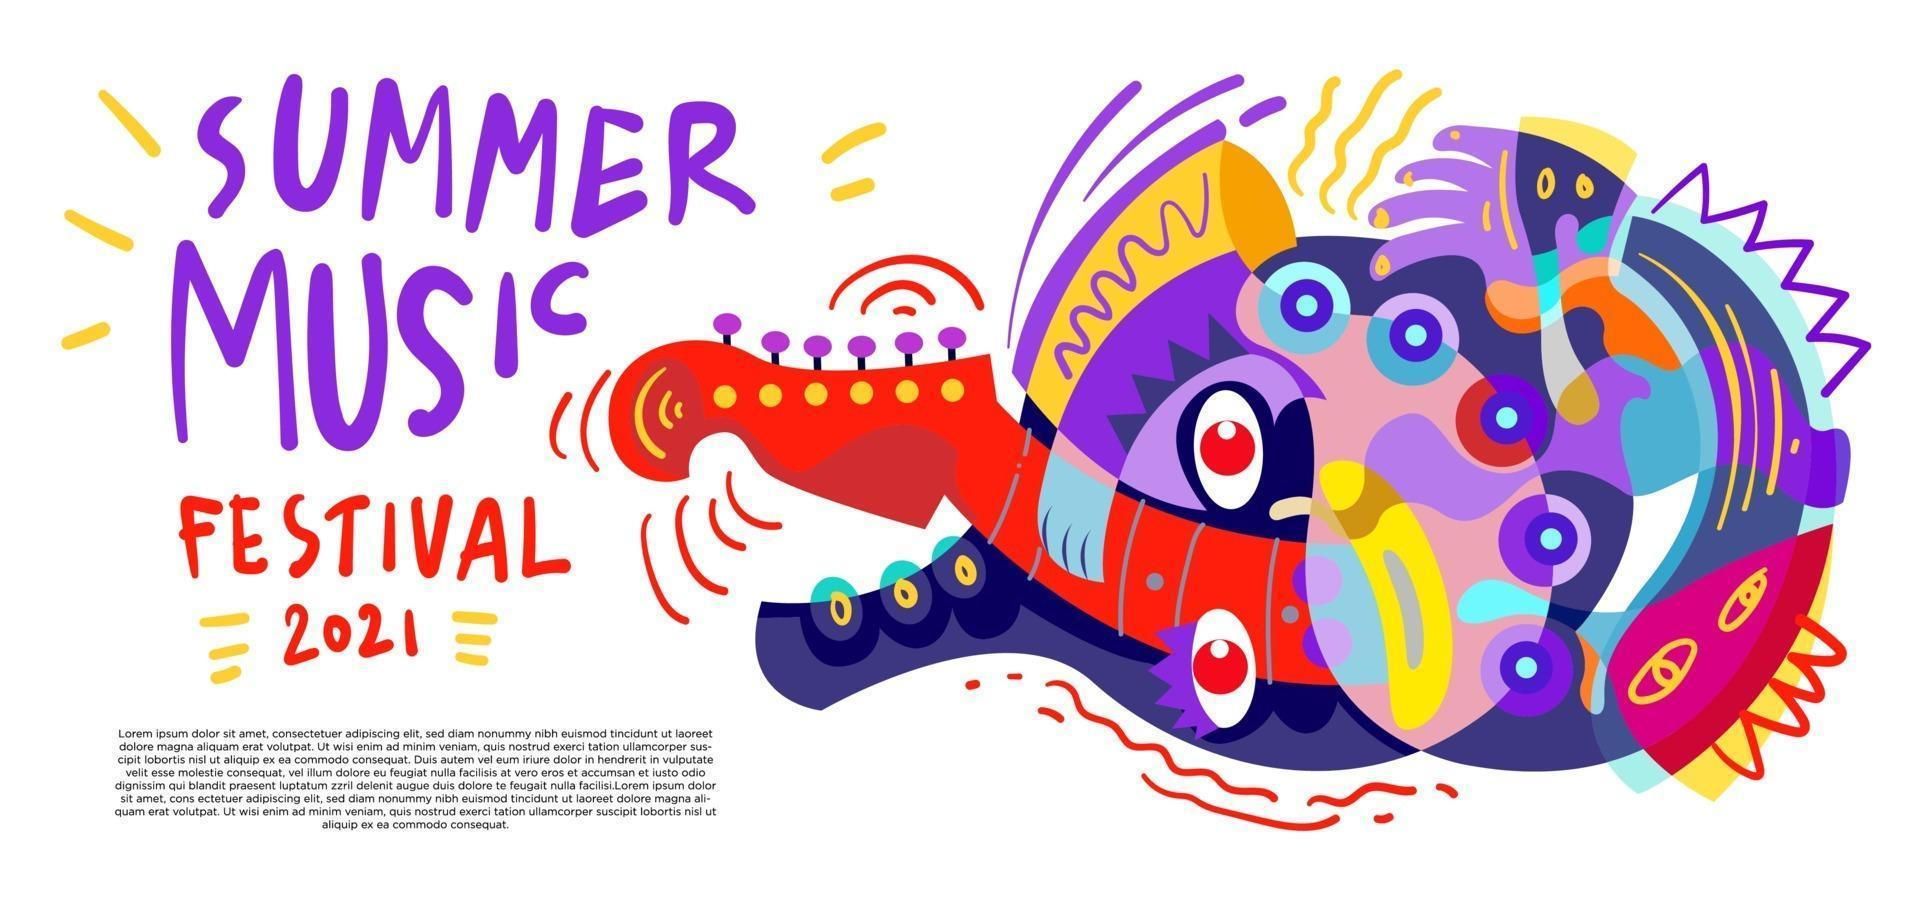 bunte Sommermusikfestival-Banner der Vektorillustration vektor